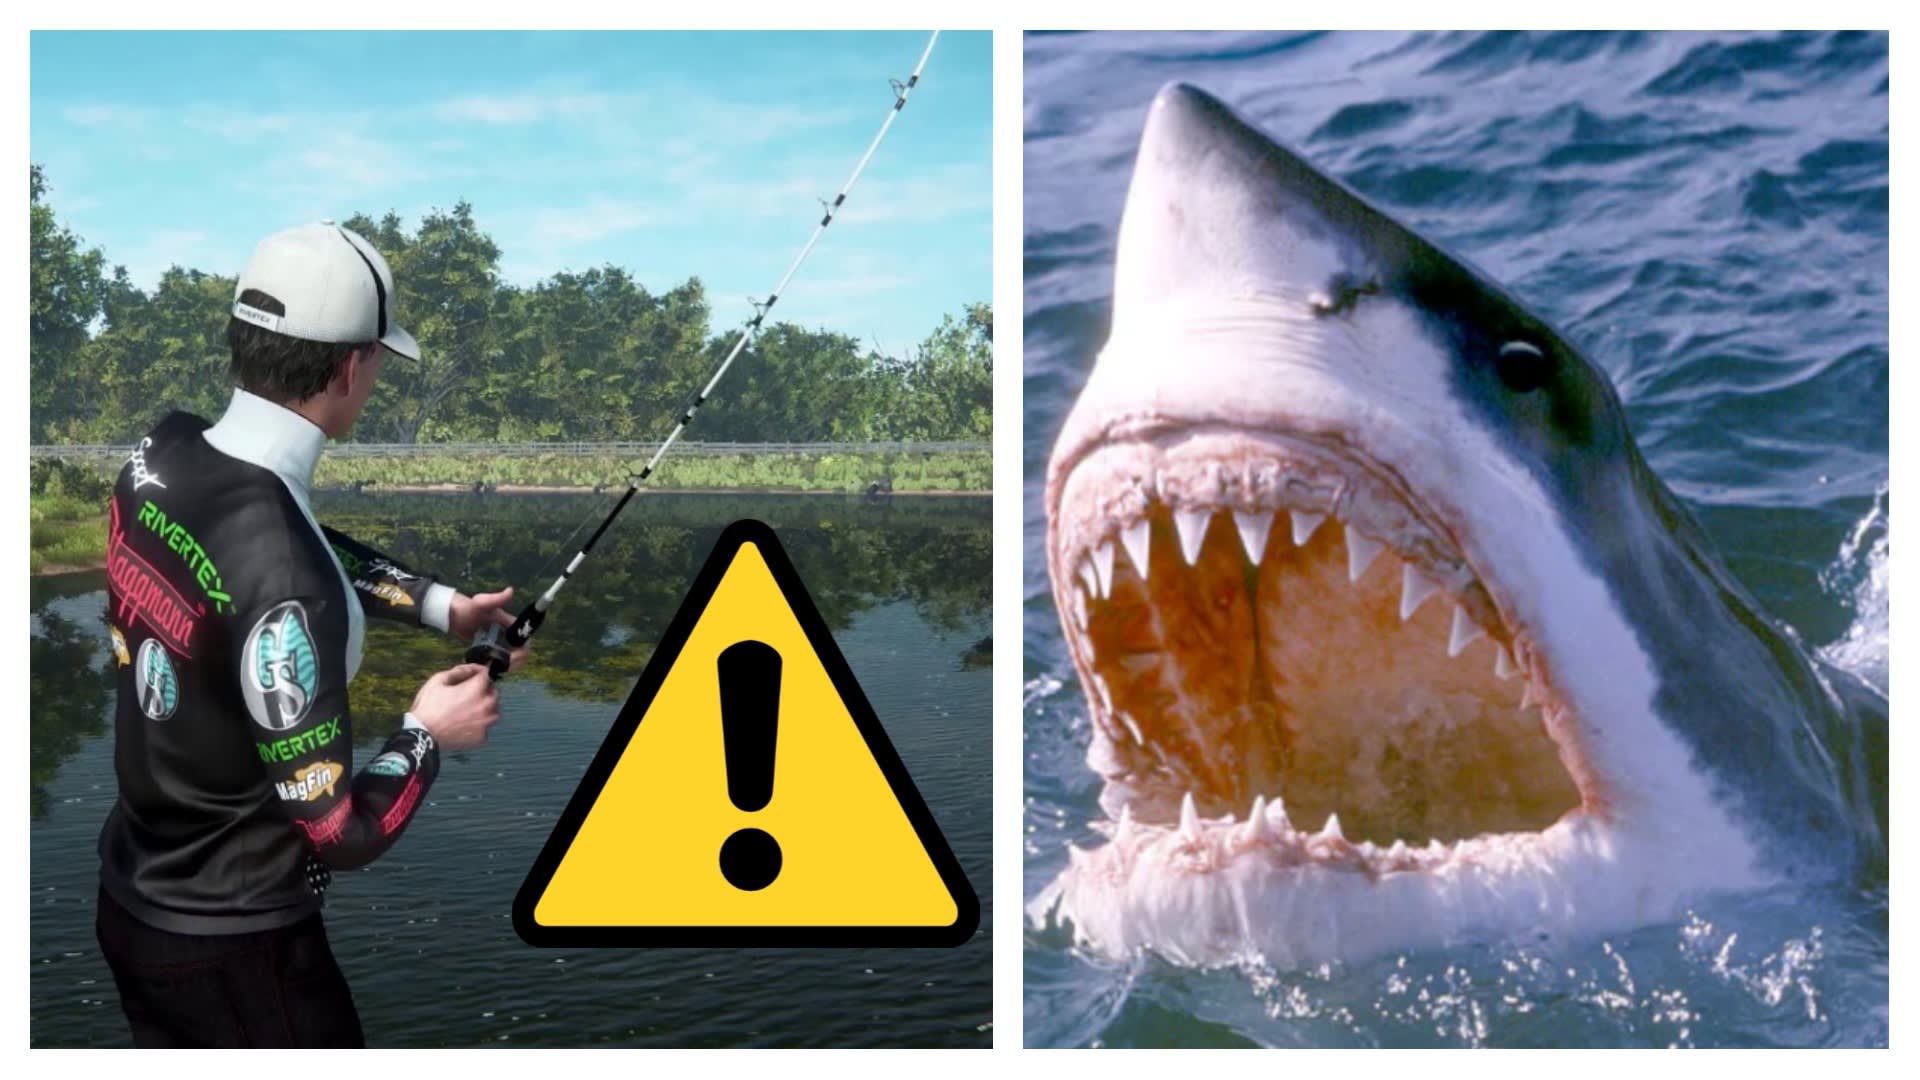 Žralok zuby má jak nože a z těch zubů čiší strach!